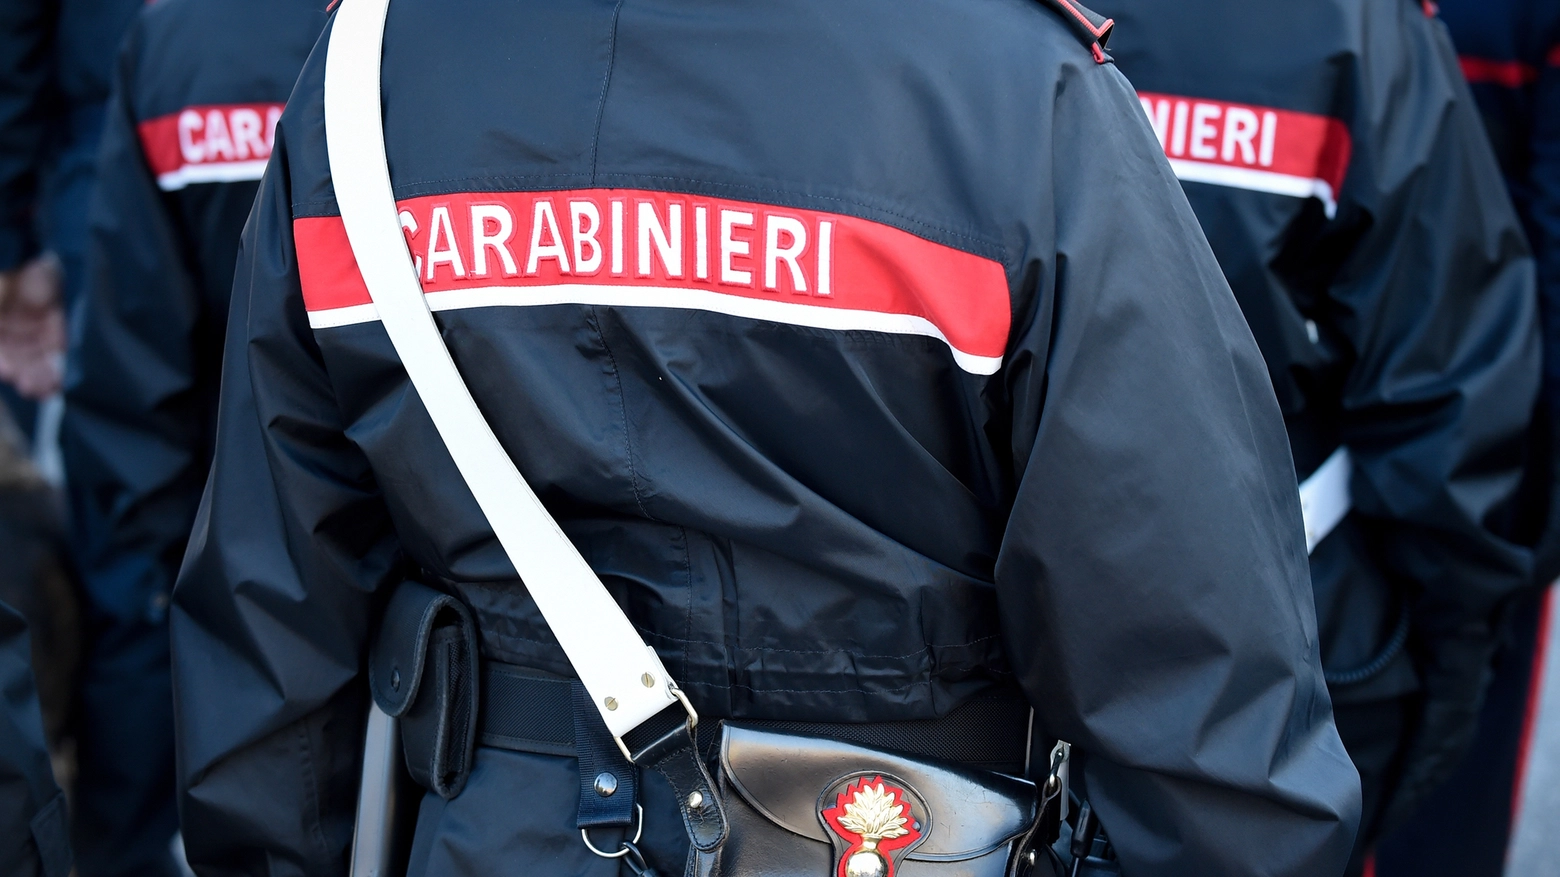 Messina: un 13enne ha accoltellato un coetaneo per 'futili motivi', indagano i carabinieri